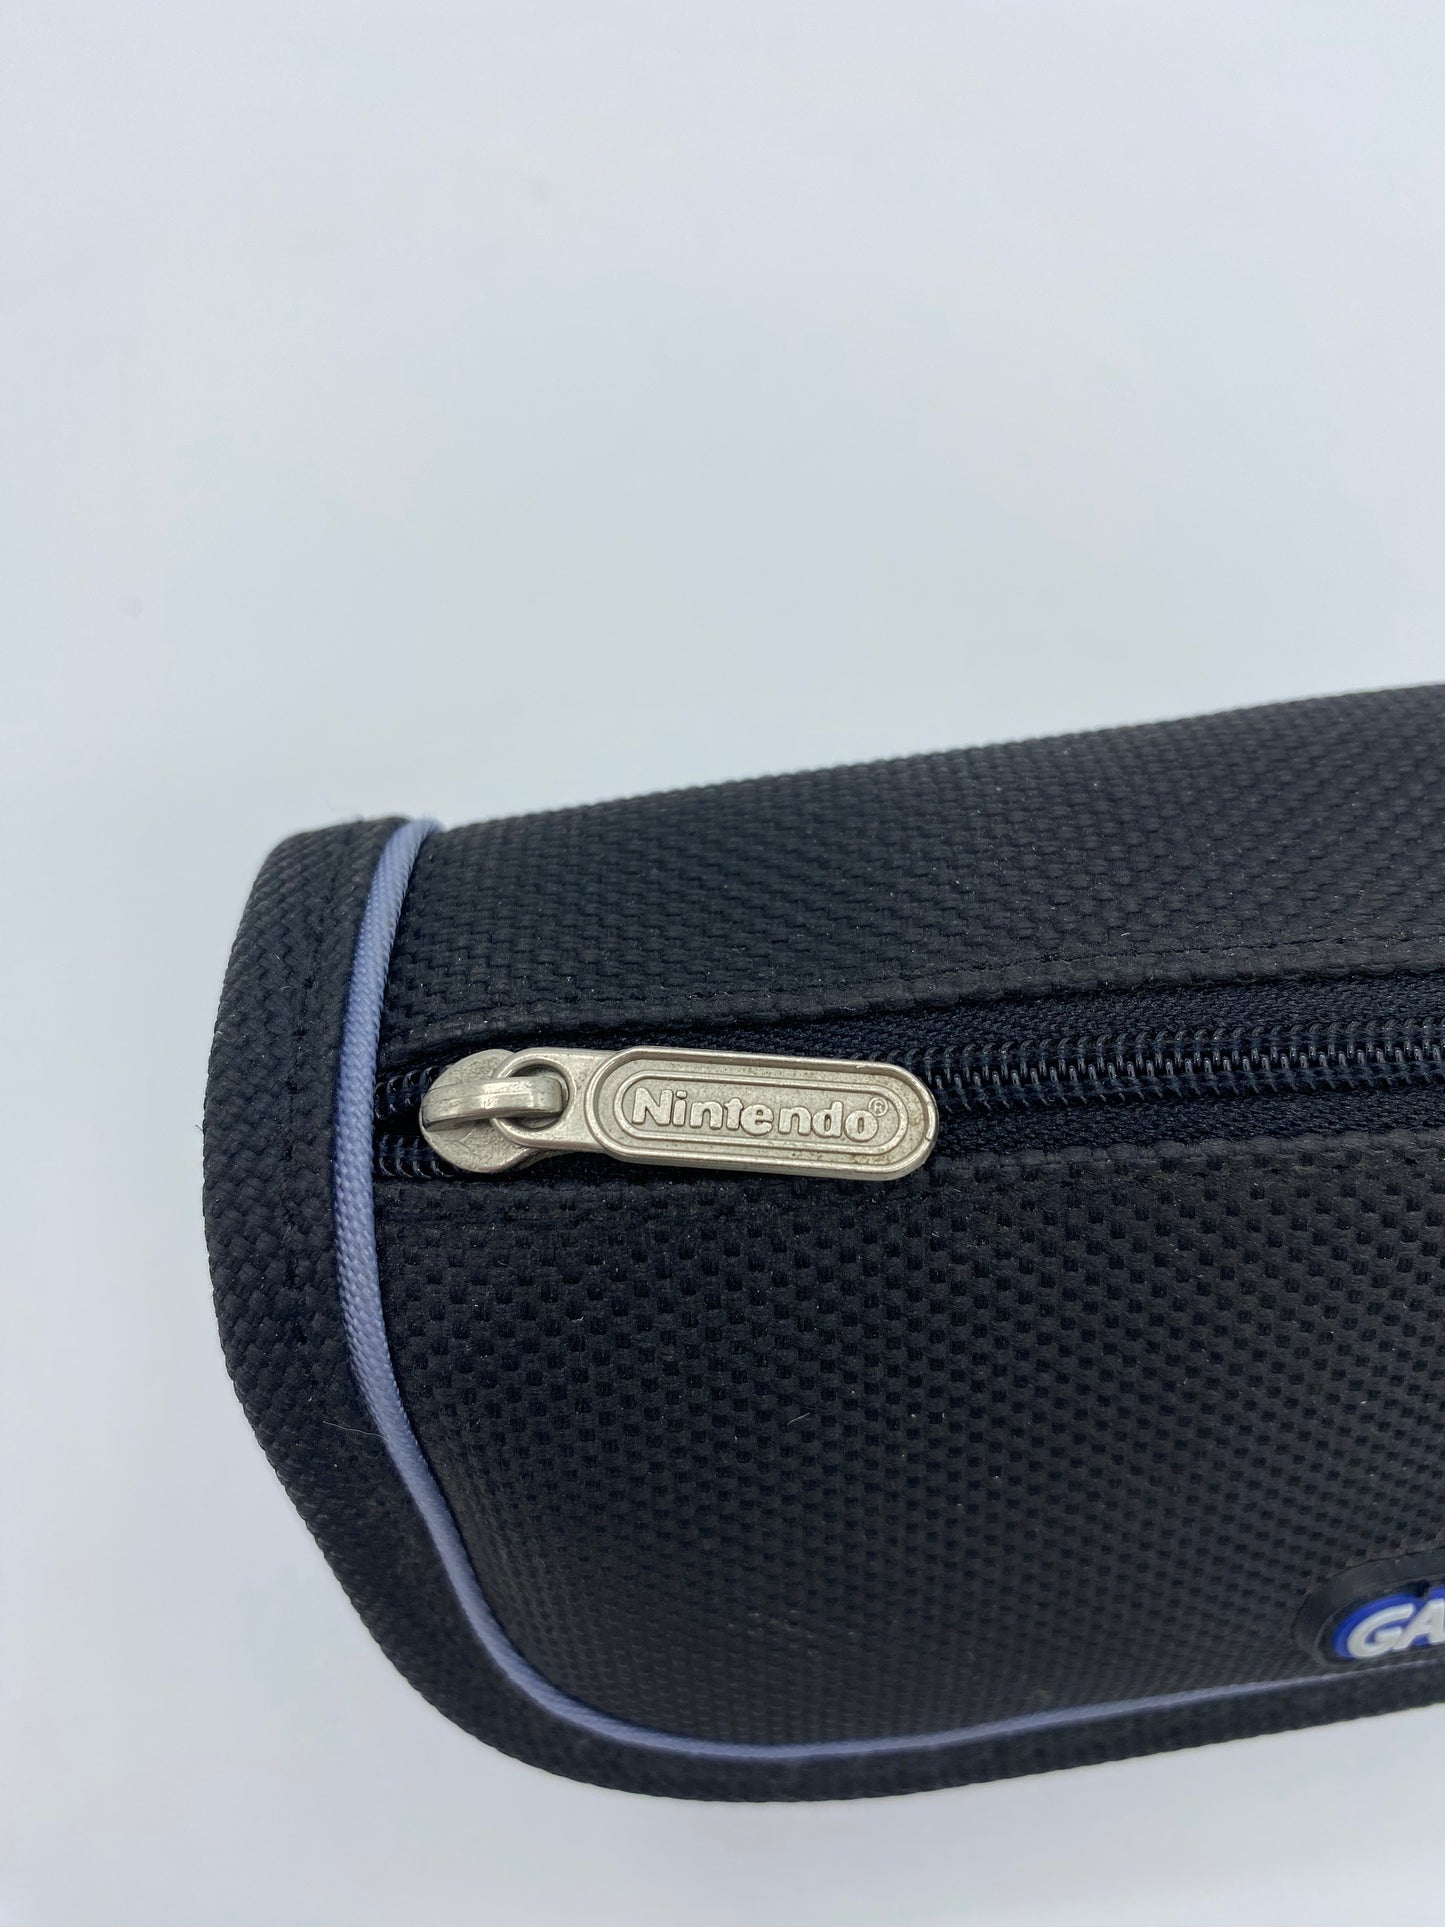 Gameboy Advance Tasche